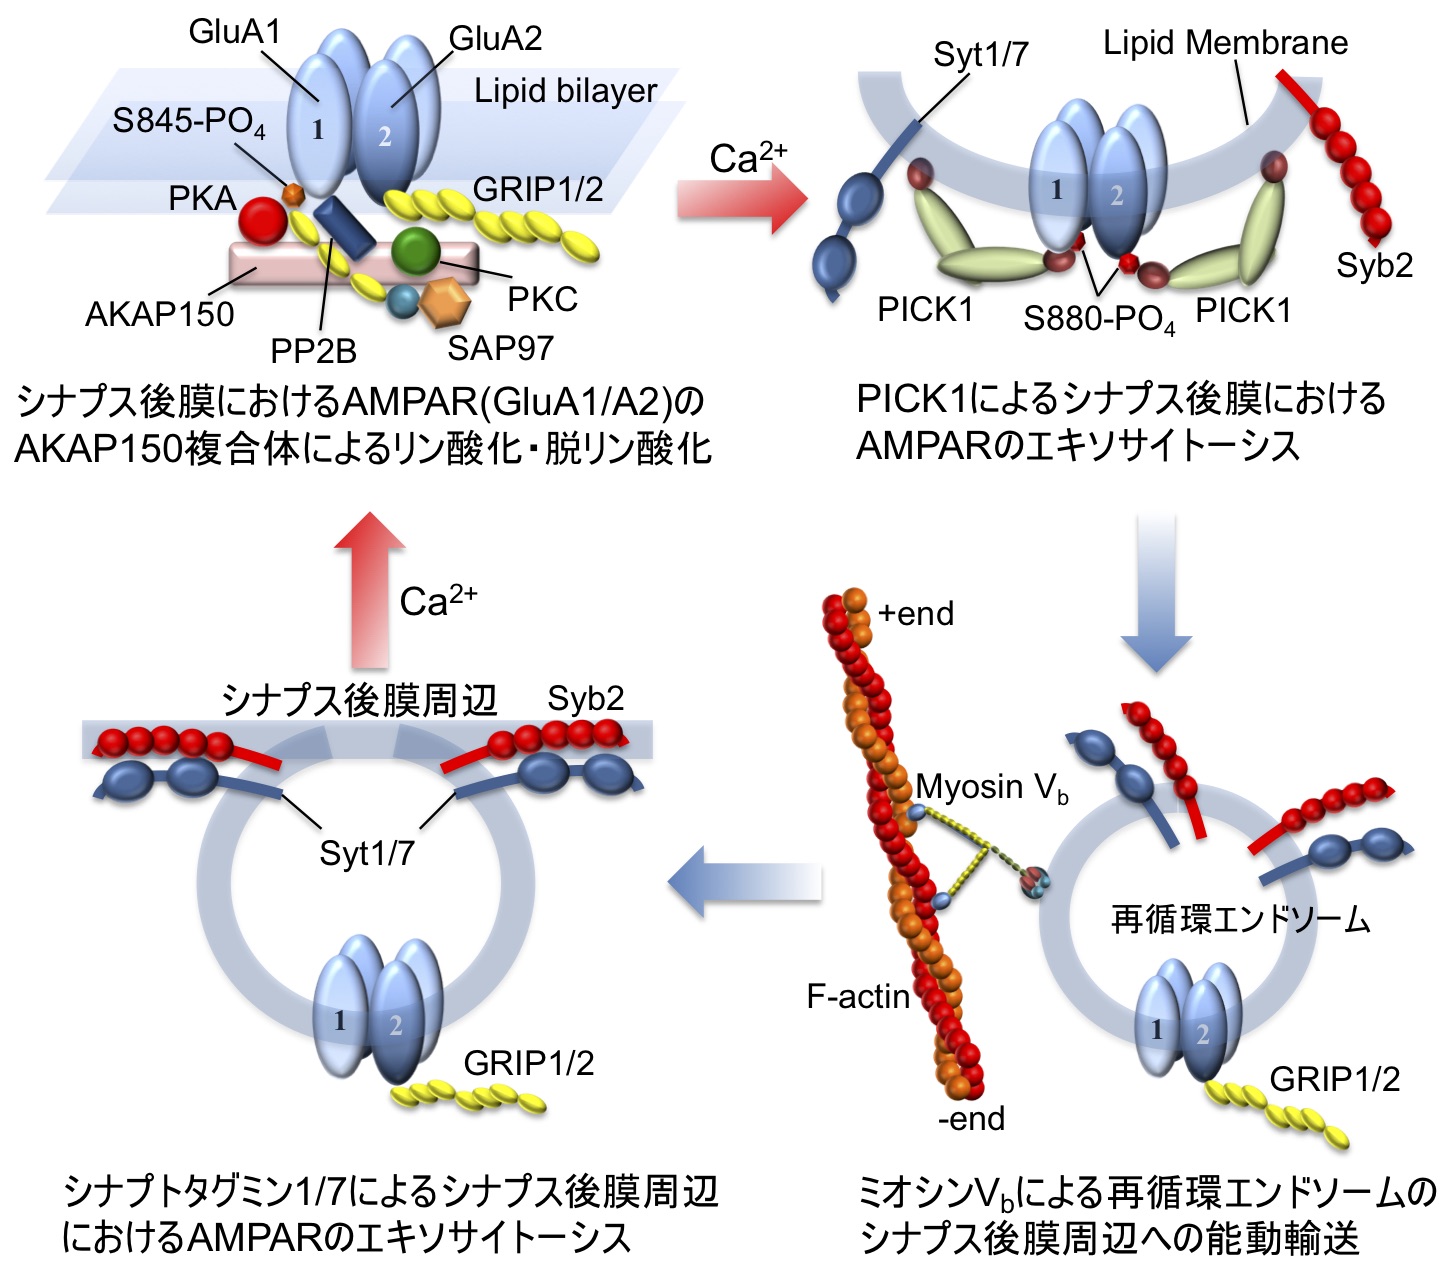 図1. 海馬興奮性ニューロンにおけるLTP/LTDを再現する後シナプスにおけるAMPAR輸送システム。(左上) AKAP150シグナル複合体(リン酸化酵素PKA, PKC; 脱リン酸化酵素PP2B)と GluA1/A2ヘテロ4量体)AMPARとの間の足場タンパク質(SAP97, GRIP1/2)を介した相互作用モデル。(右上) カルシウムセンサPICK1によるAMPARのカルシウム依存エンドサイトーシス。(右下) エンドサイトーシスで細胞質内に取り込まれたAMPAR含有再循環エンドソームの分子モーターミオシンVbによるシナプス後膜周辺方向への能動的輸送。(左下) カルシウムセンサシナプトタグミン1/7(Syt1/7)によるAMPAR含有再循環エンドソームのカルシウム依存エキソサイトーシスによるシナプス後膜周辺へのAMPARの取り込み。